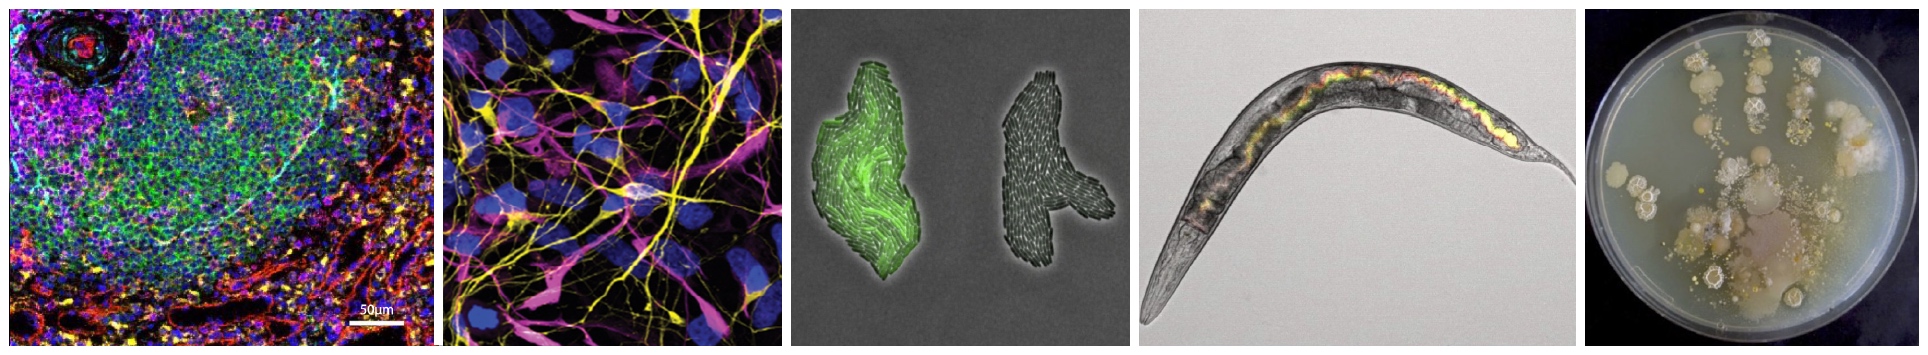 Bilder von Studienobjekte der Biowissenschaften wie z. B. Gewebezellen